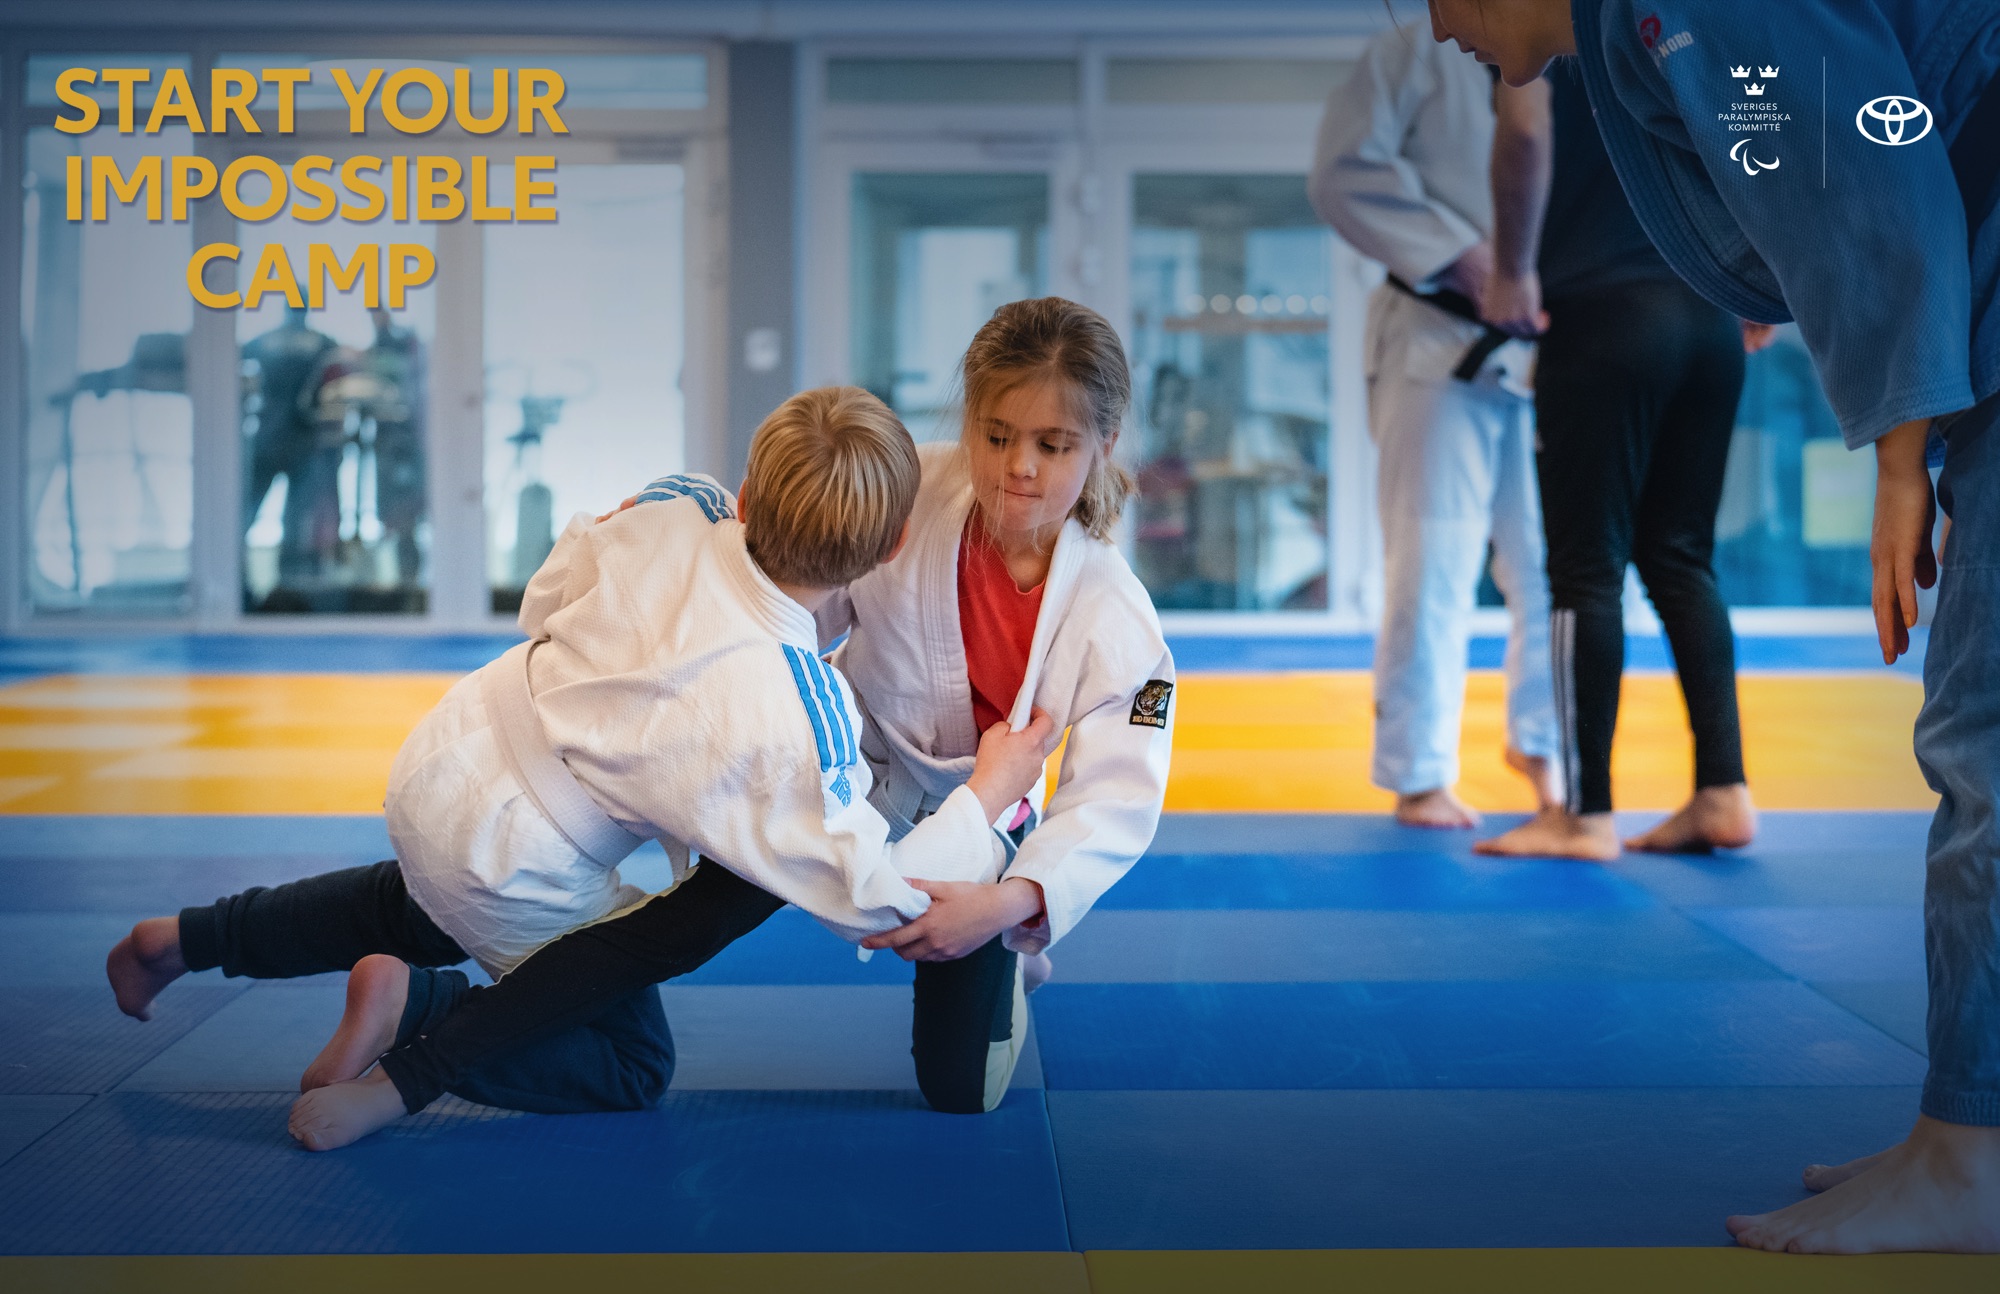 Inomhusmiljö, judosal. Två barn testar judogrepp på en judomatta. En ledare står bredvid och ger instruktioner.